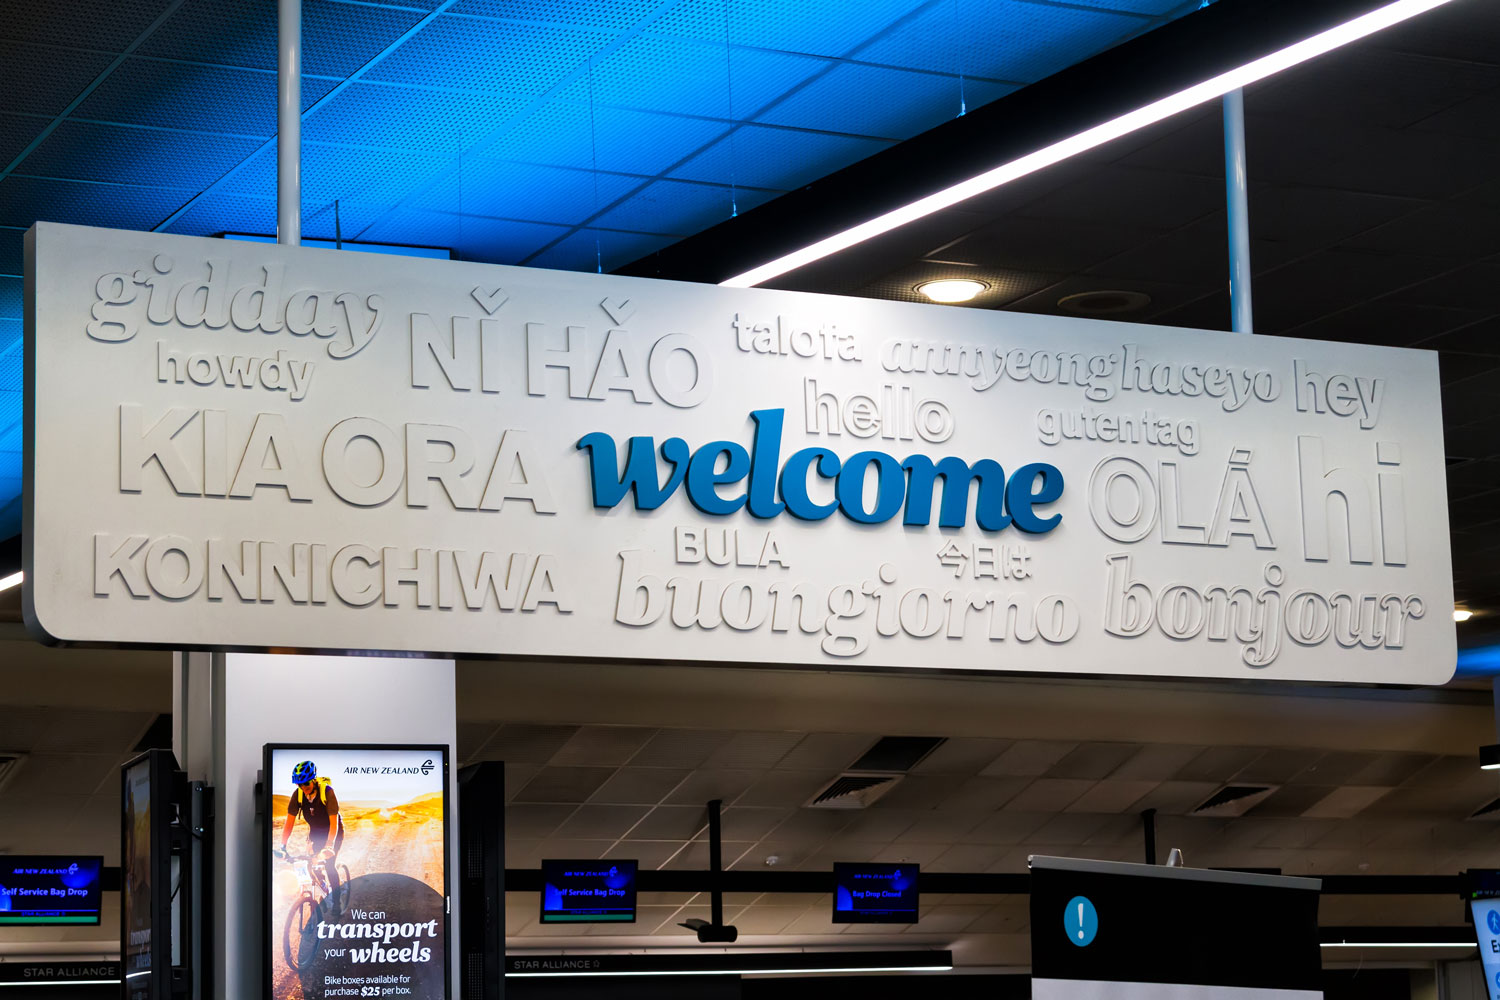 Аэропорт окленд новая зеландия